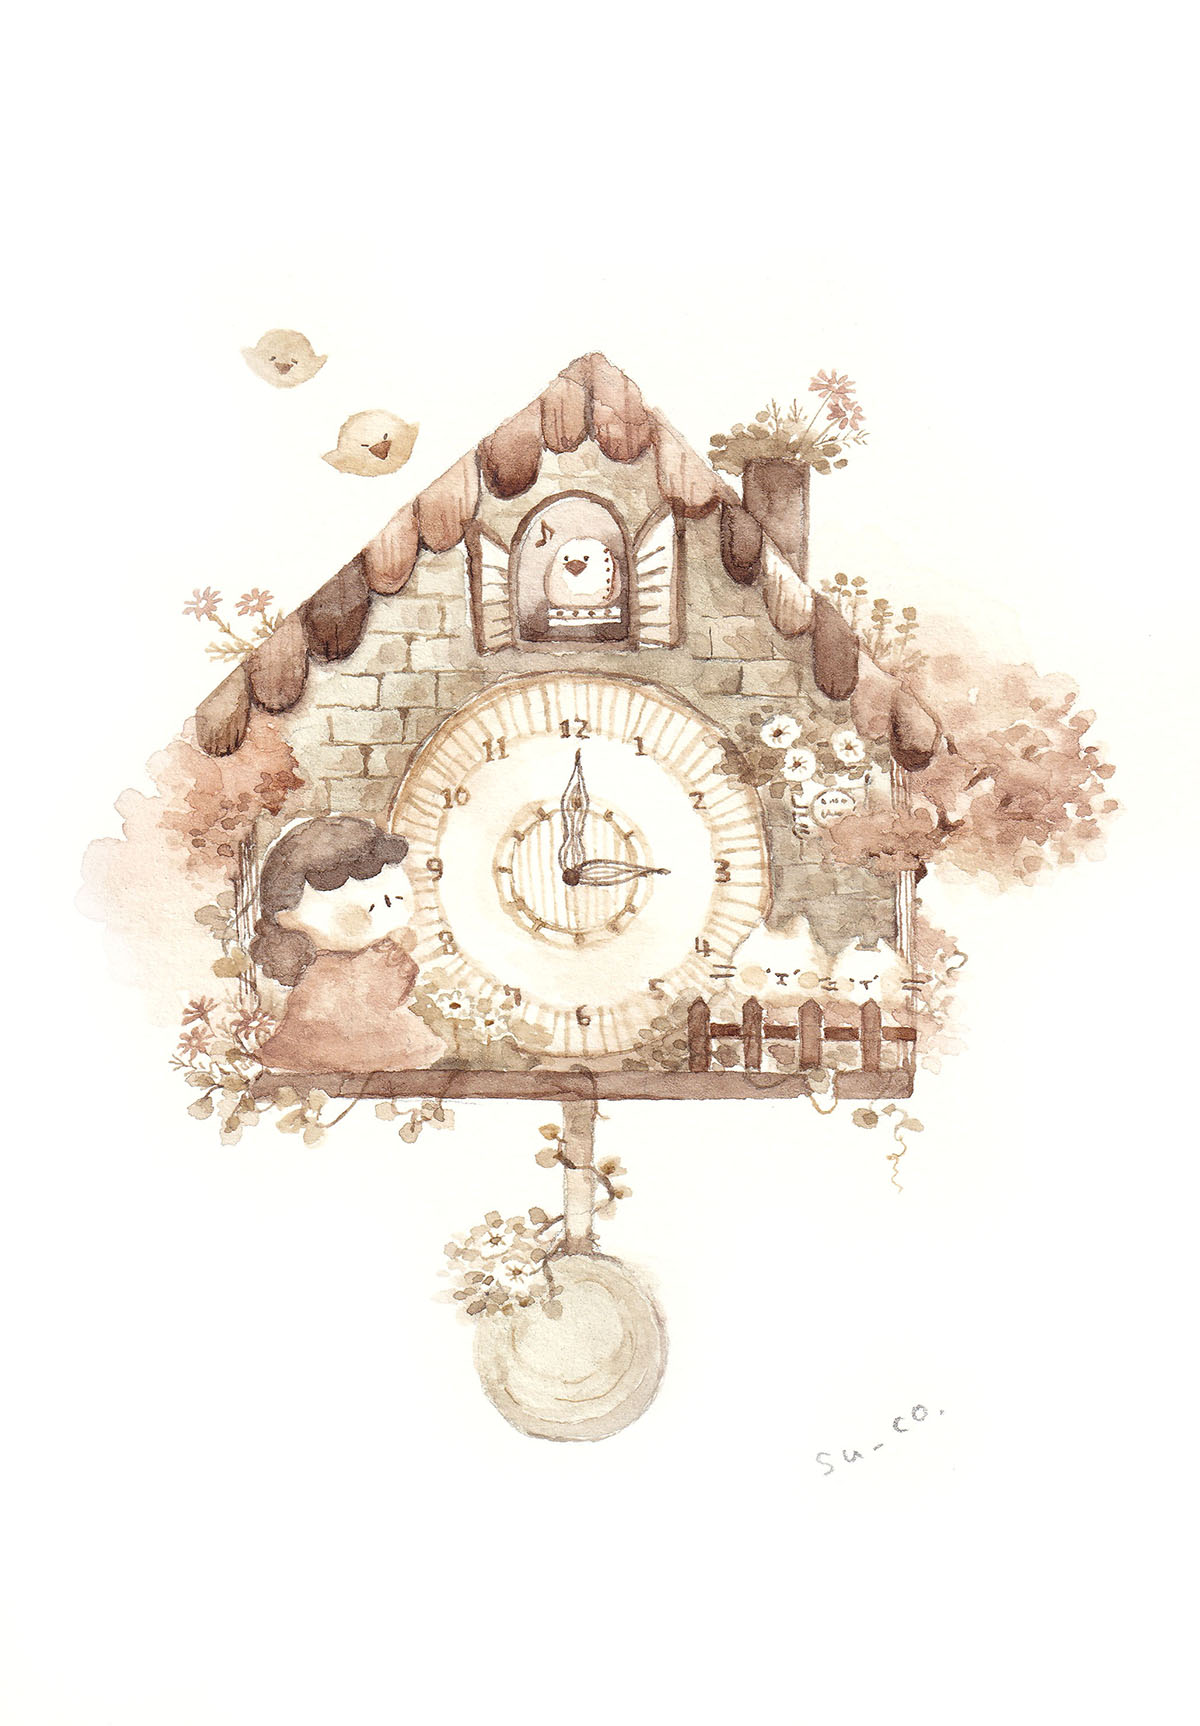 ট ইট র Su Co 時の記念日 偶々最近描きました 時計 の絵2点です 今後 難しいですが懐中時計も描いてみたいです イラスト 透明水彩 T Co 1z3bqd7brb ট ইট র